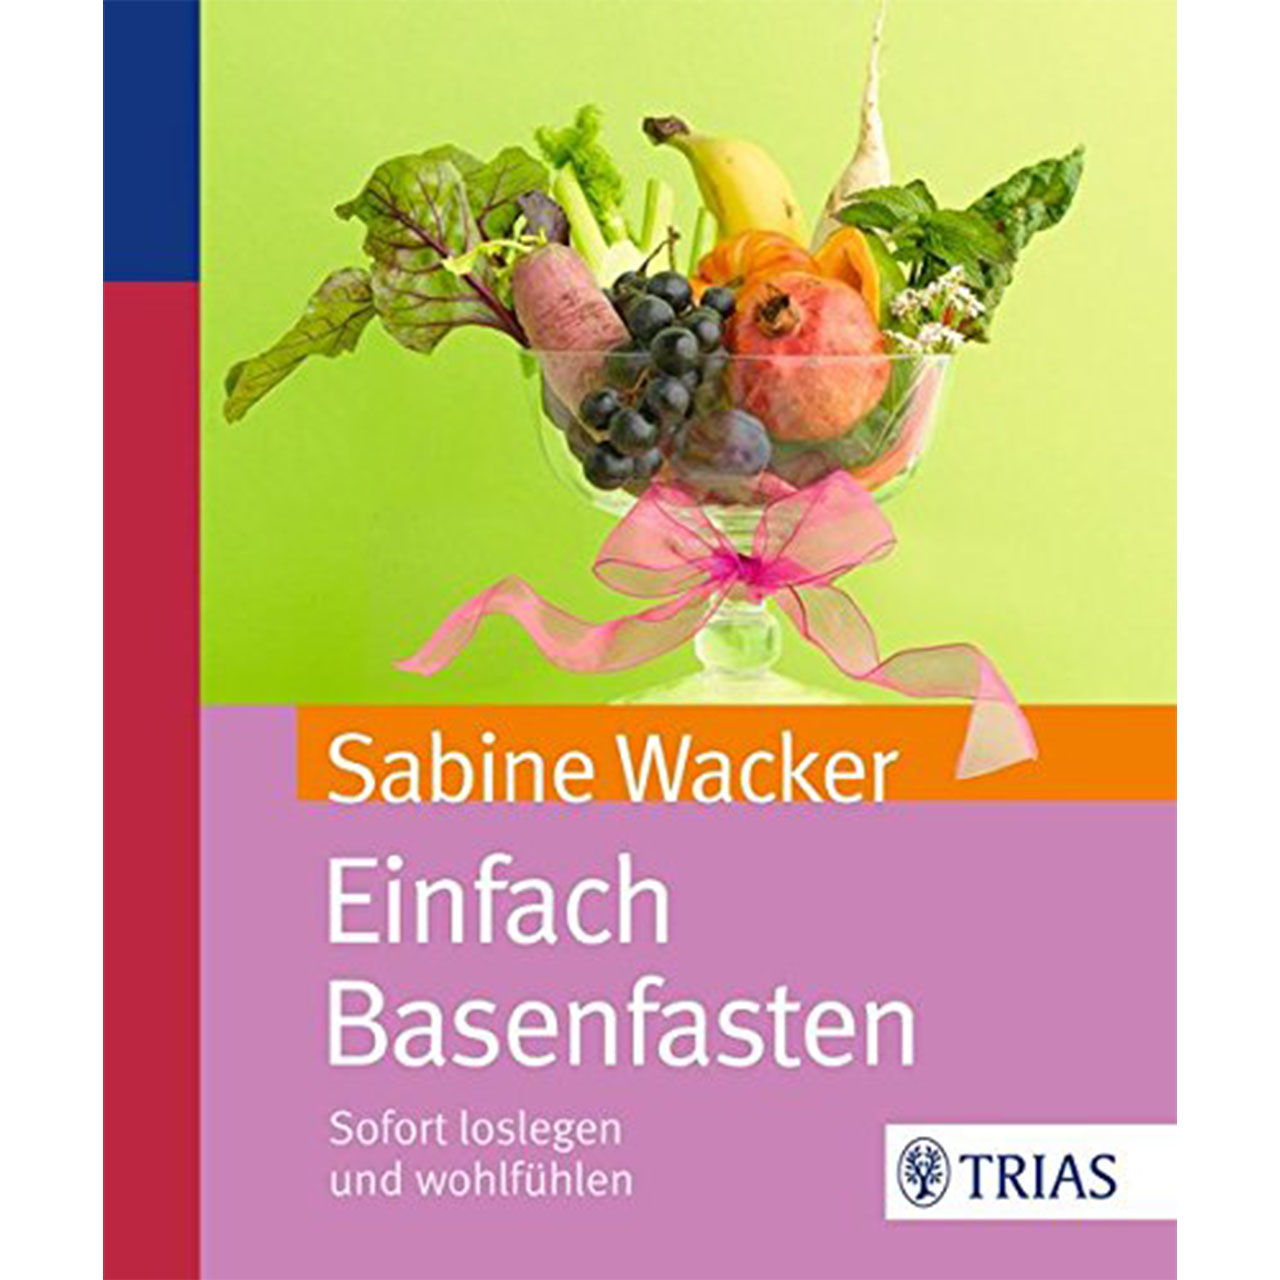 Einfach basenfasten von Sabine Wacker, TRIAS-Verlag